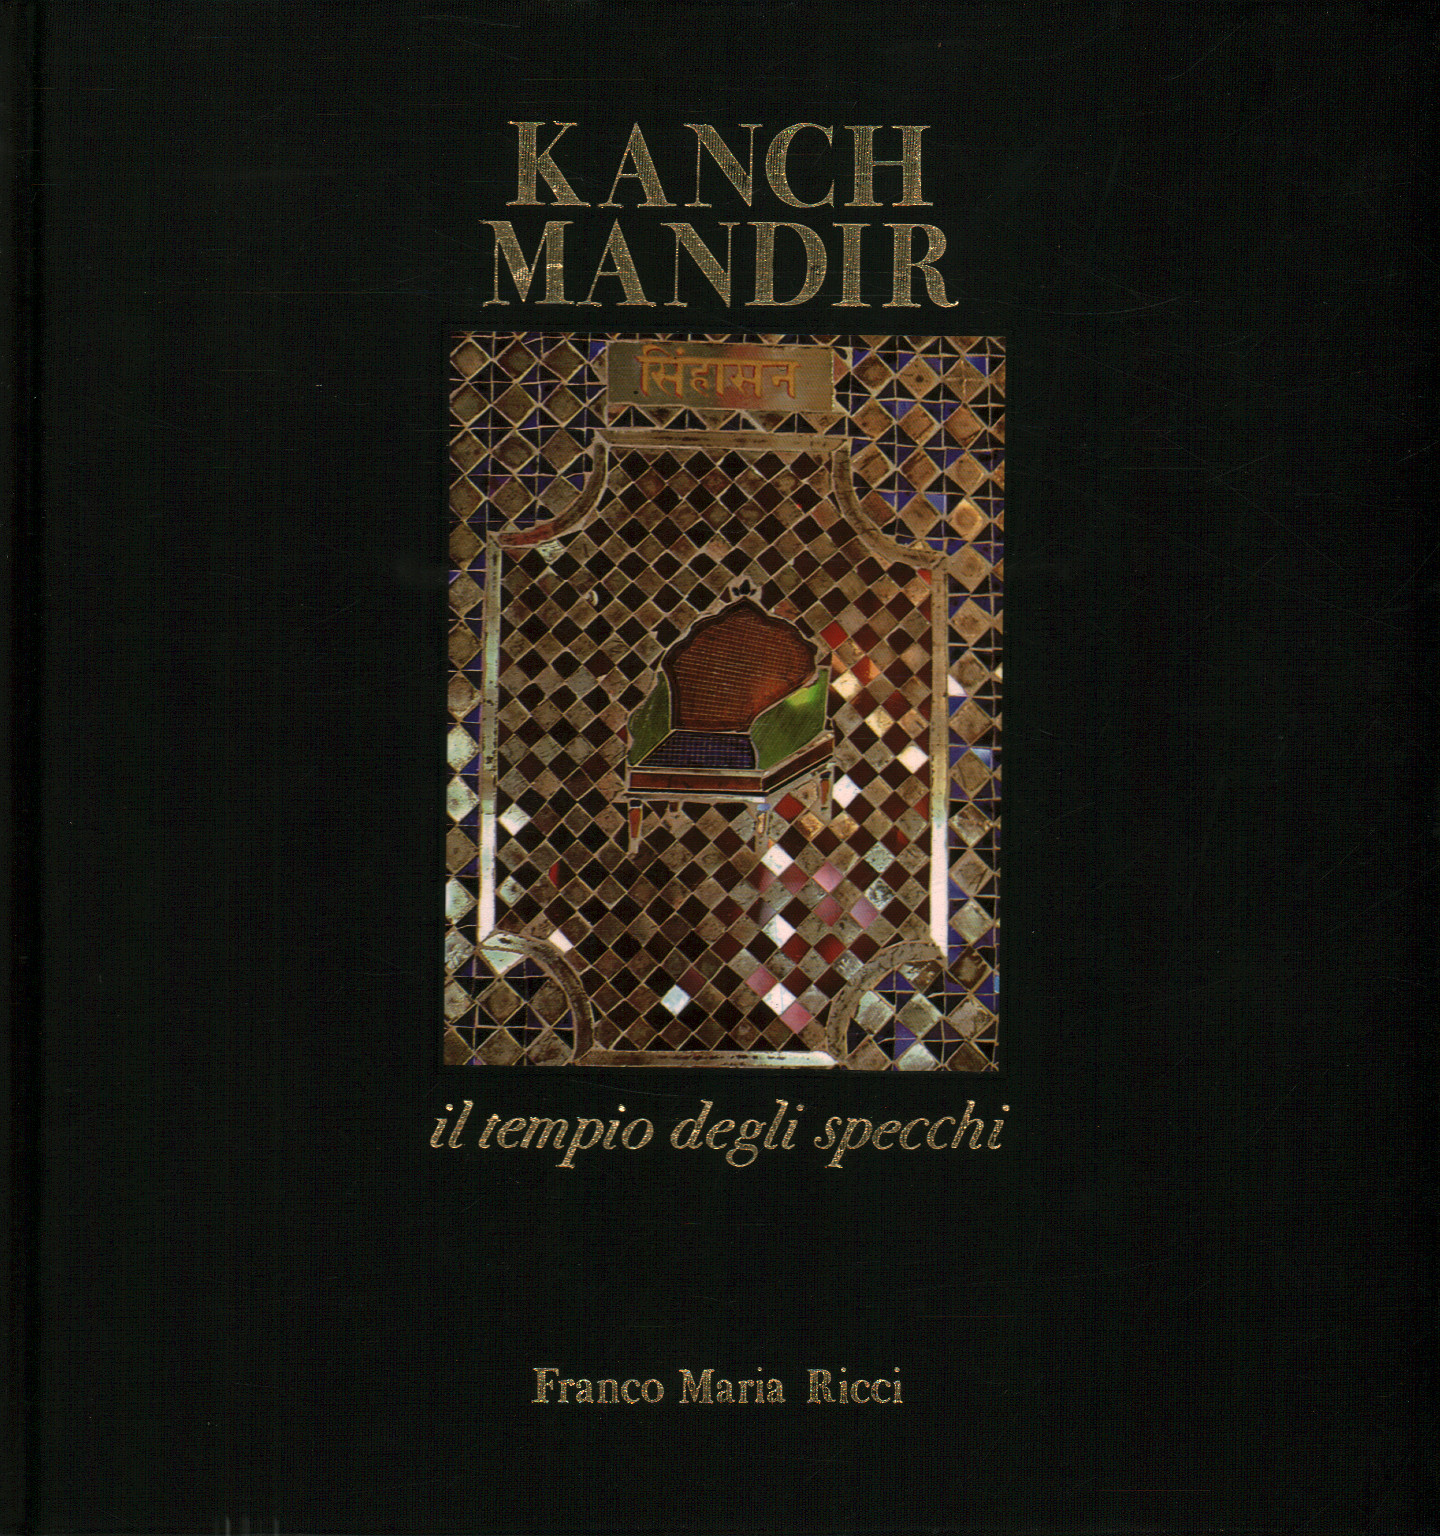 Kanch Mandir, der Tempel der Spiegel